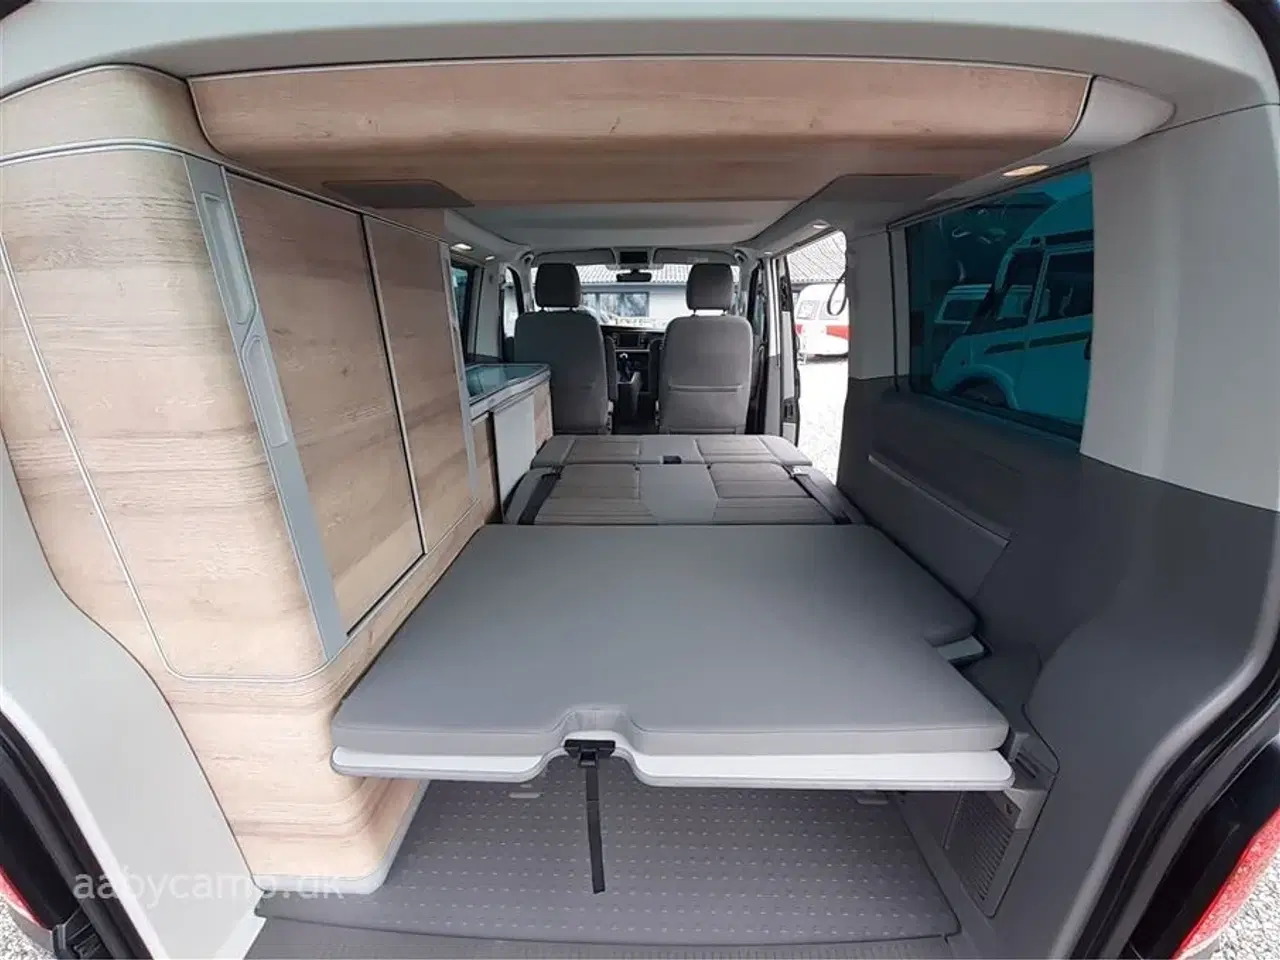 Billede 21 - 2021 - VW California Coast Aut.   Lille kompakt camper. DSG. Adaptiv fartpilot. sommer/vinterhjul. undervognsbehandlet fra ny.